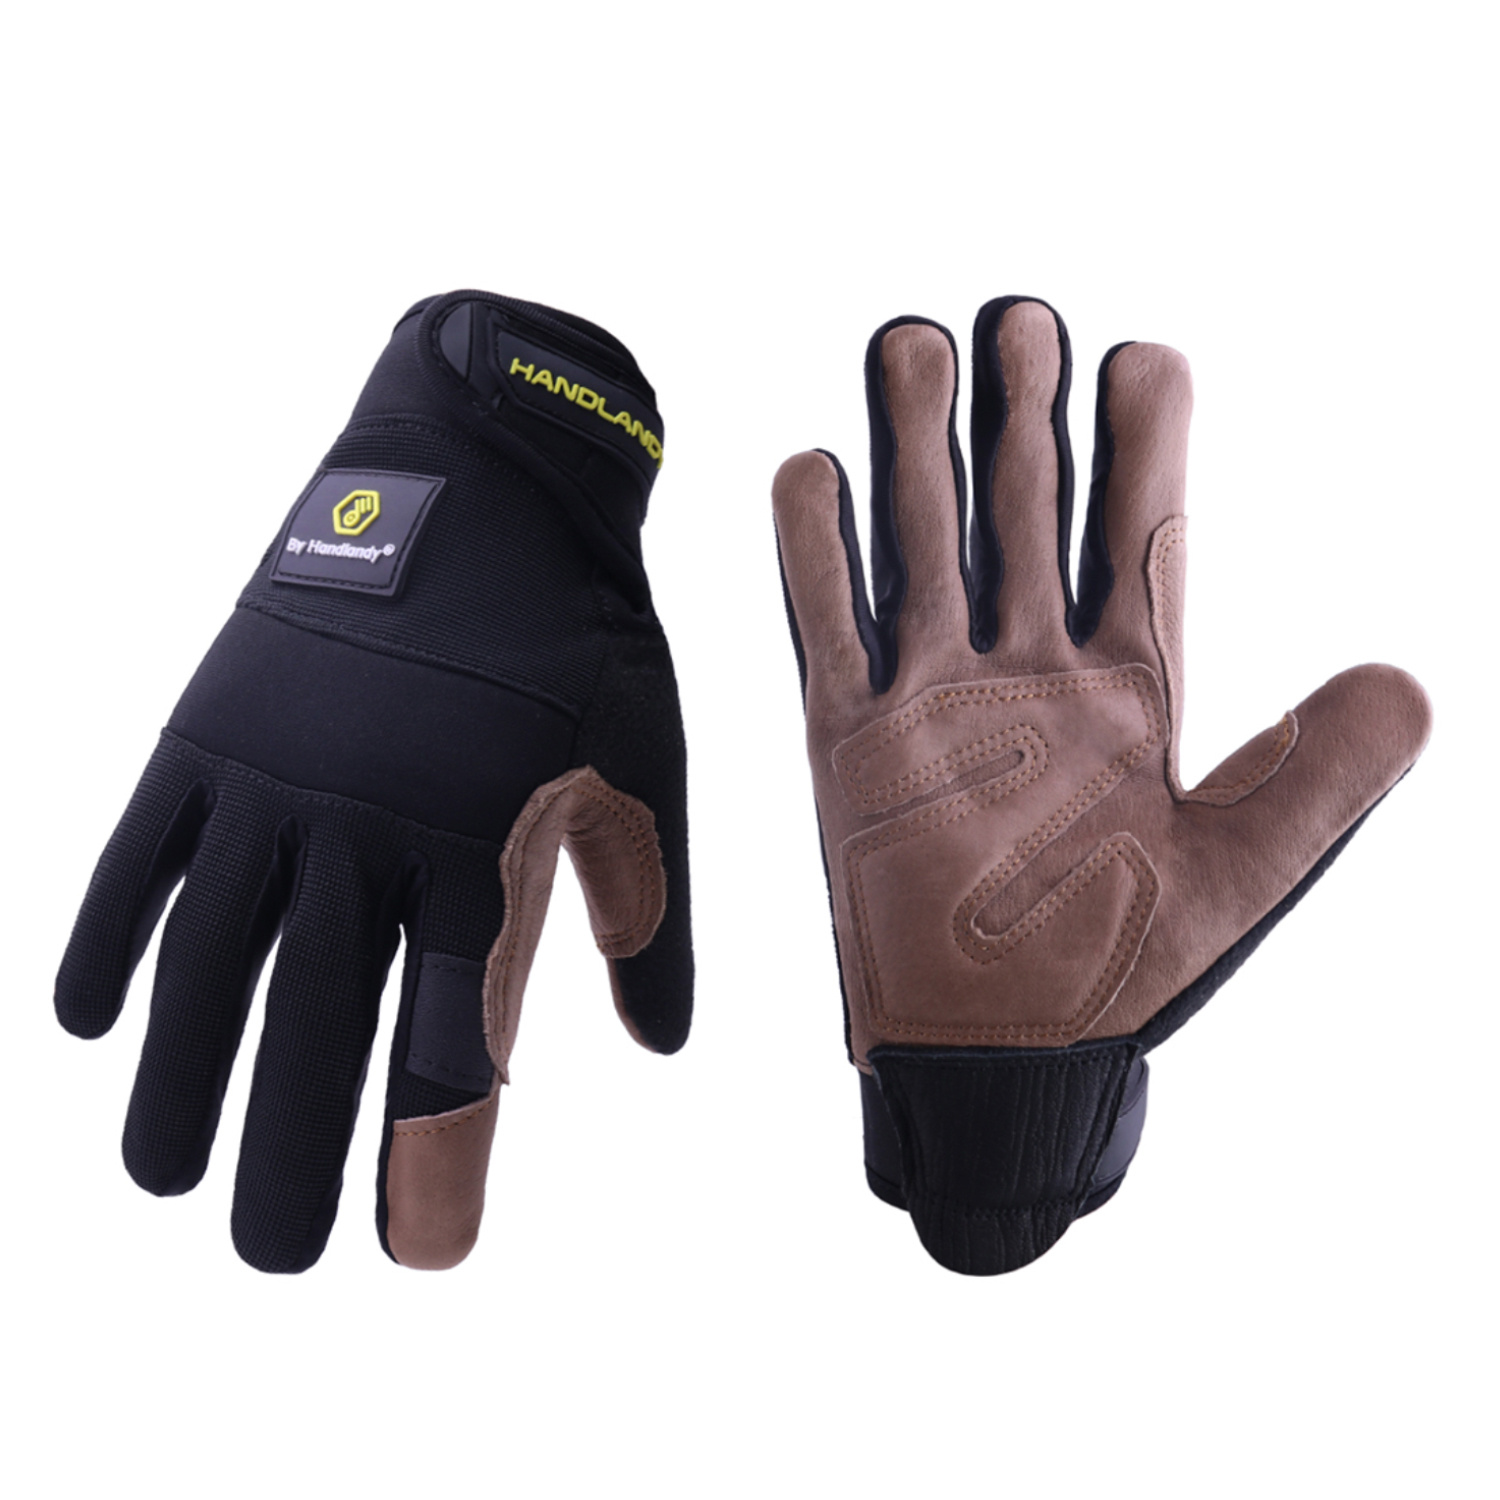  Toledano industries 12 pares de guantes de trabajo de cuero  pequeños. Ideal para protección de manos en todos los ambientes. :  Herramientas y Mejoras del Hogar